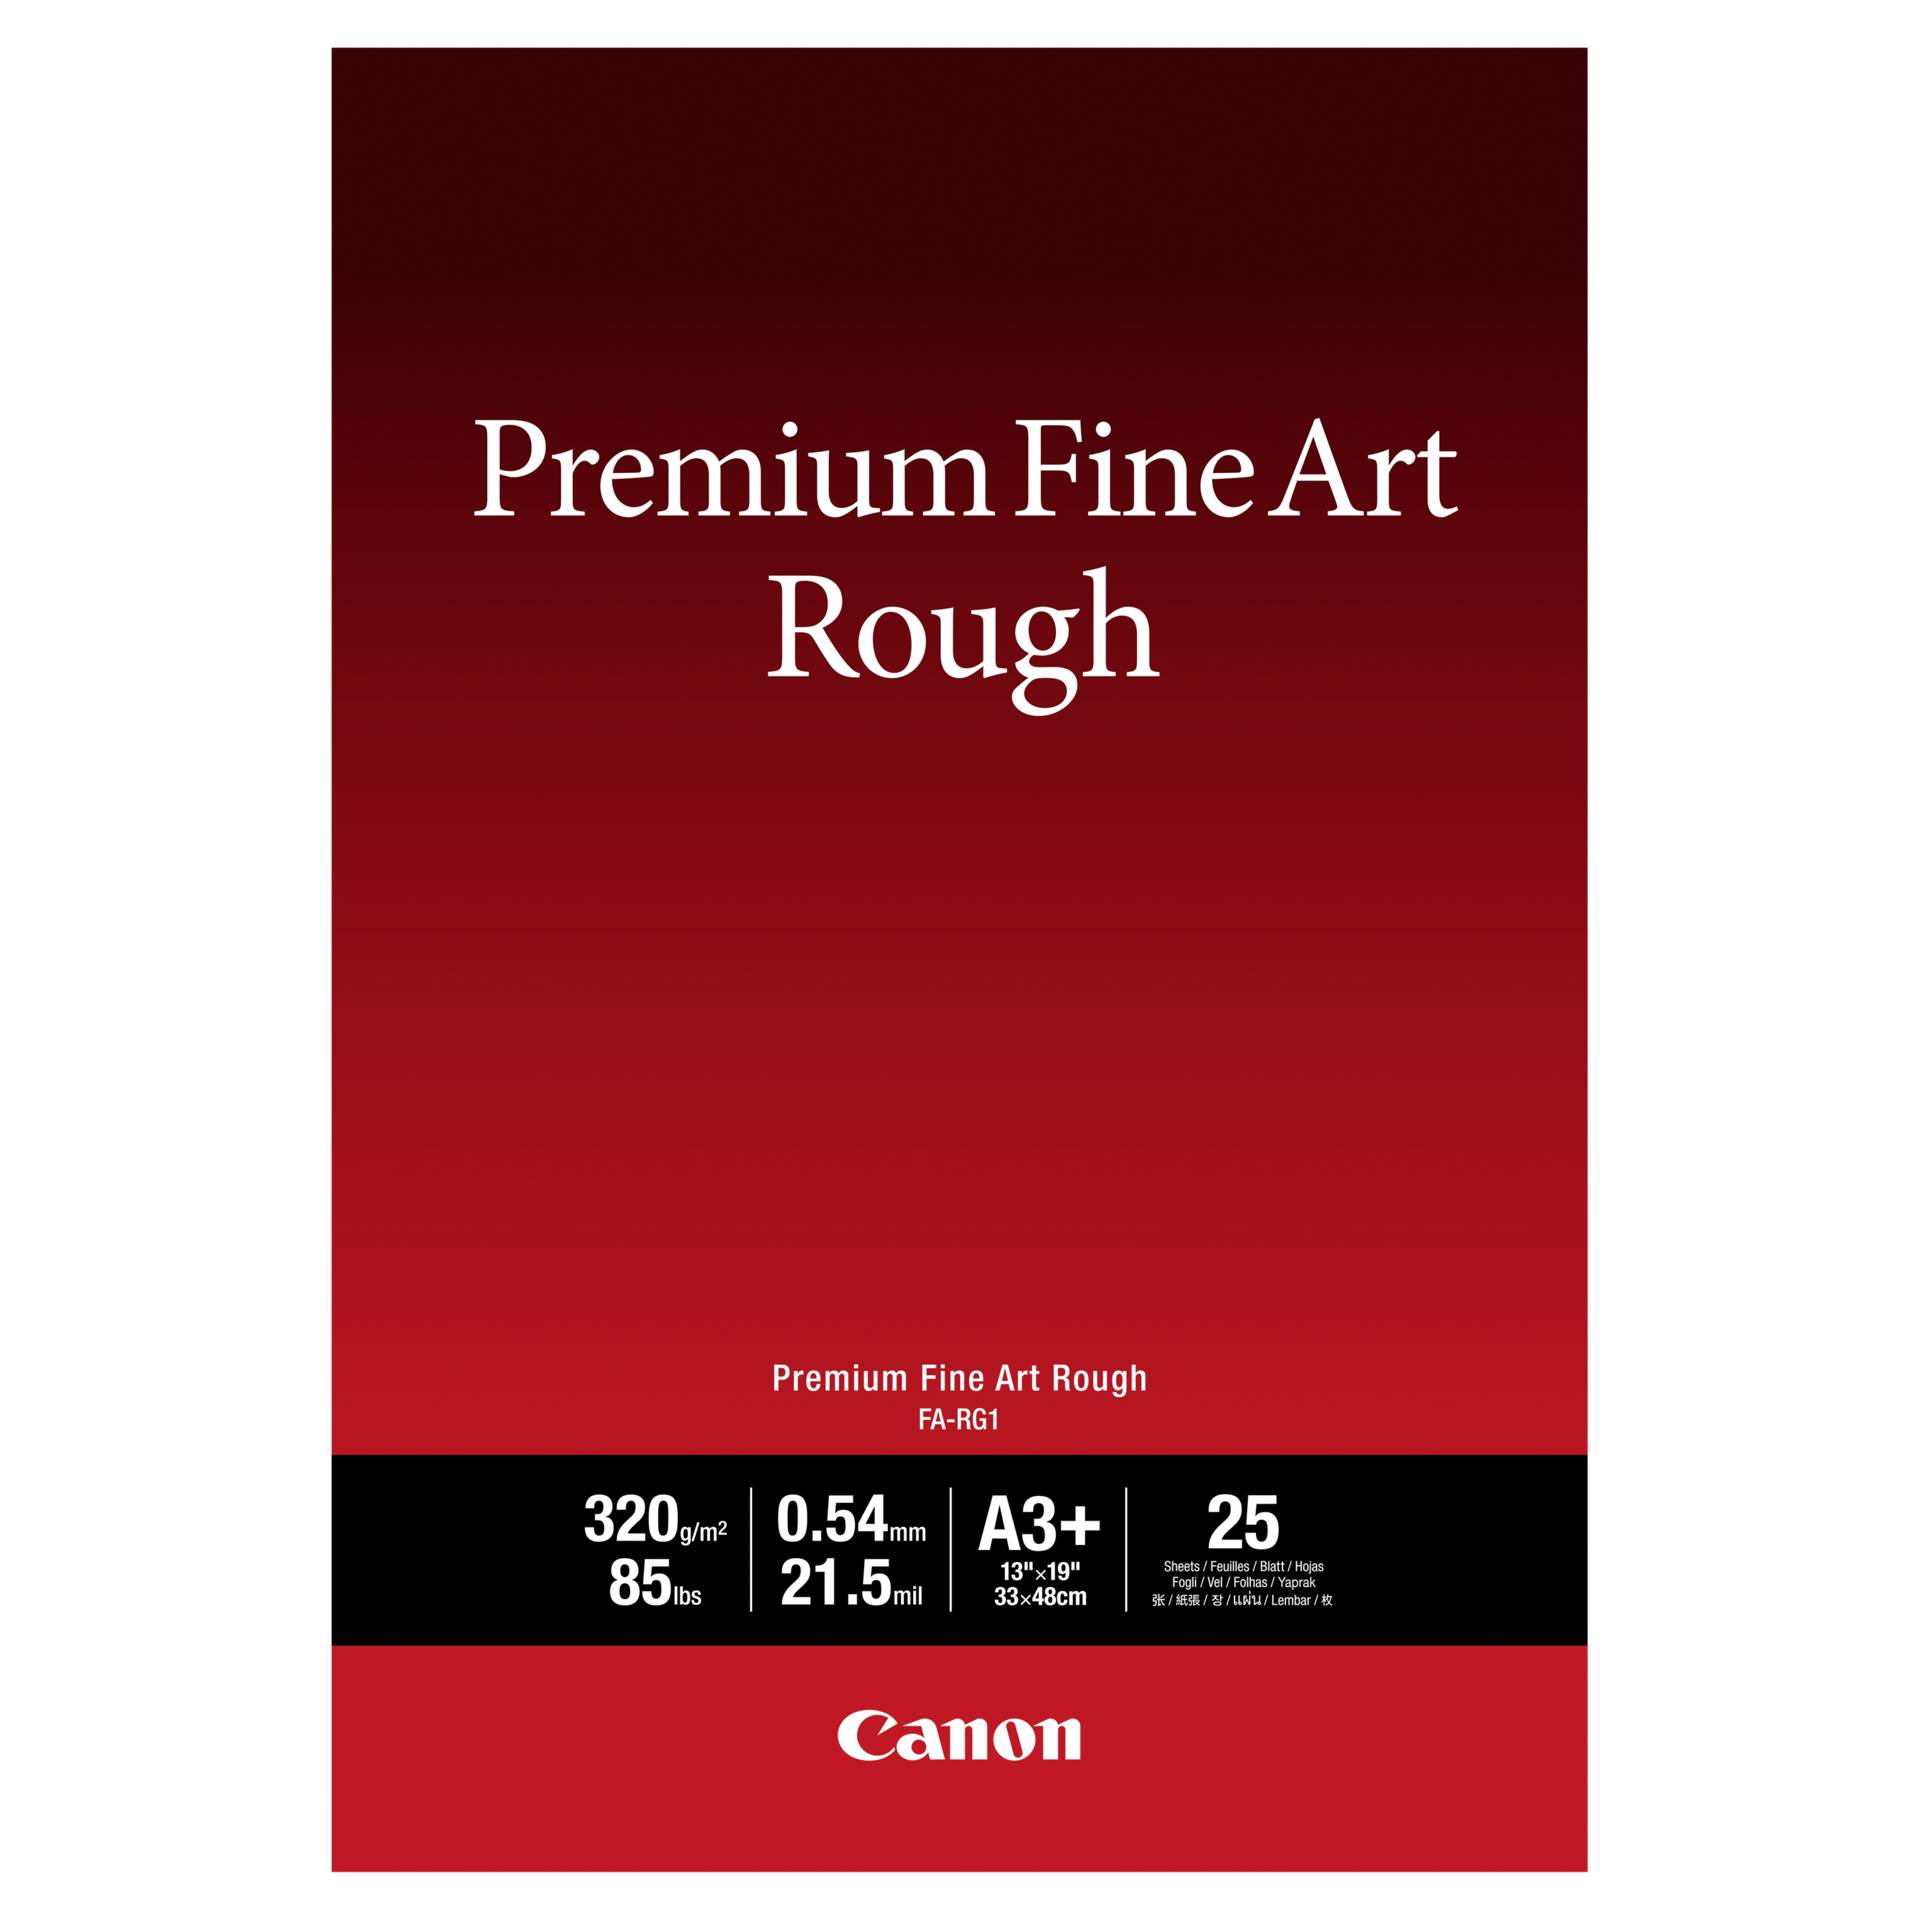 Canon FA-RG 1 Premium Fine Art Rough A 3+, 25 Sheet, 320 g